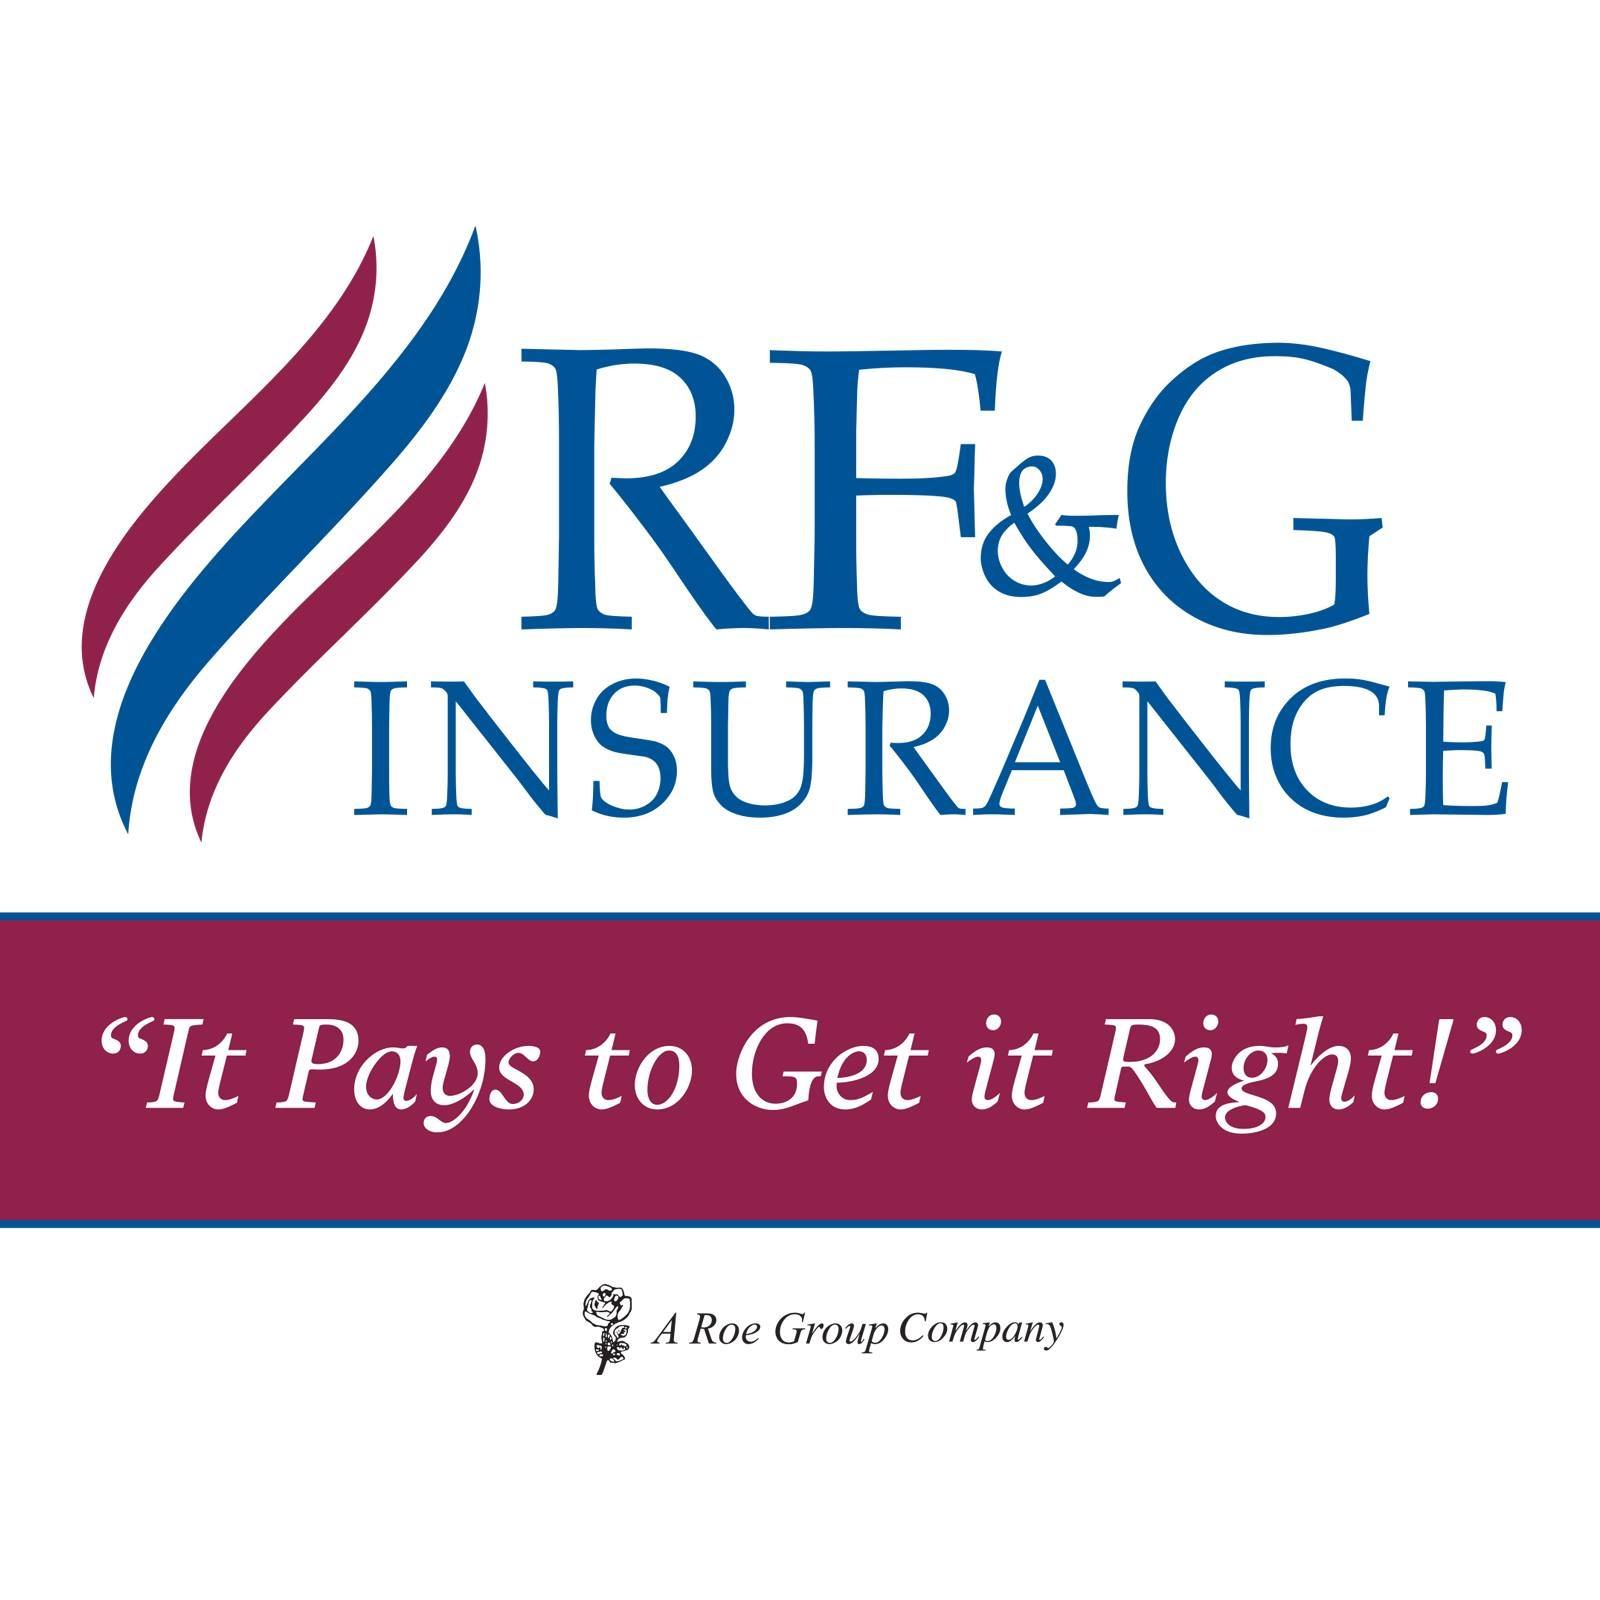 RF&G Insurance